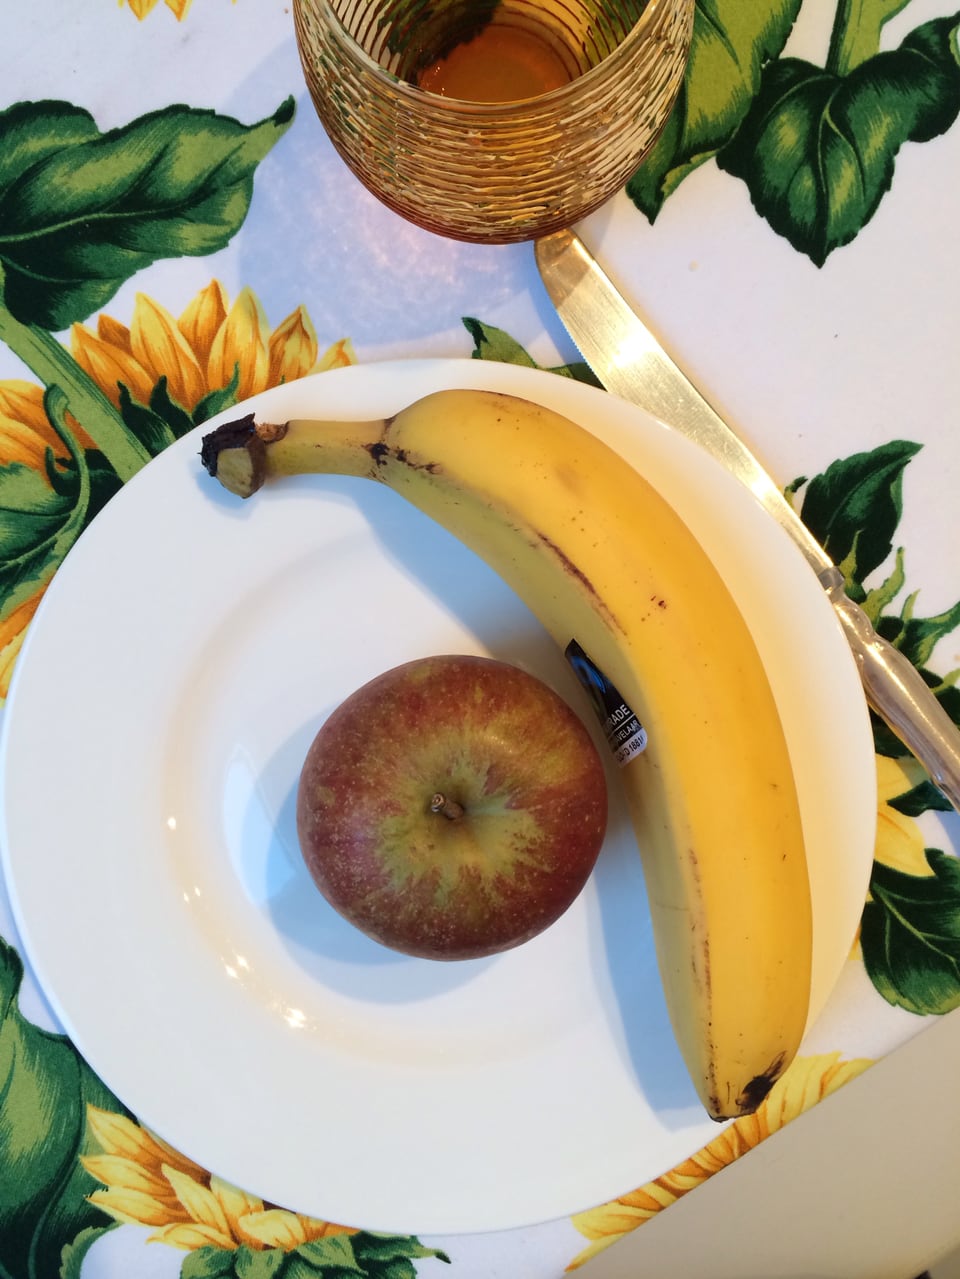 Banane und Apfel liegen auf einem Teller.